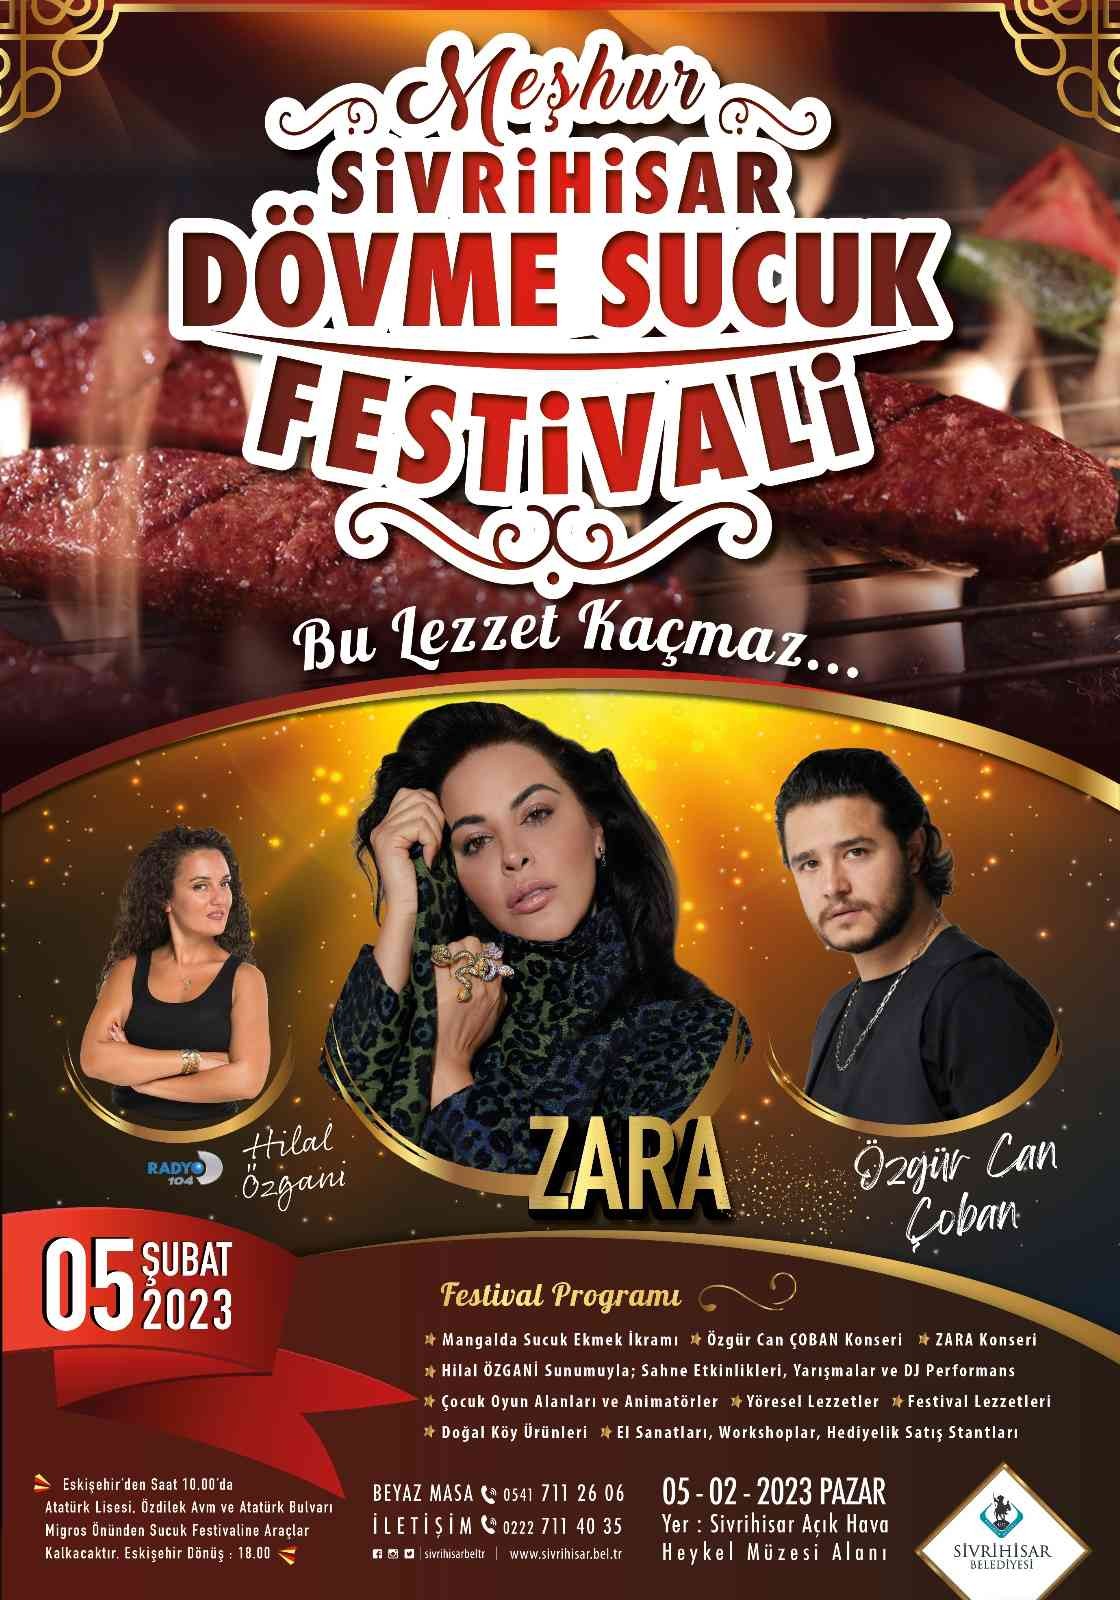 Sivrihisar Dövme Sucuk Festivali’nde Zara ve Özgür Can Çoban sahne alacak